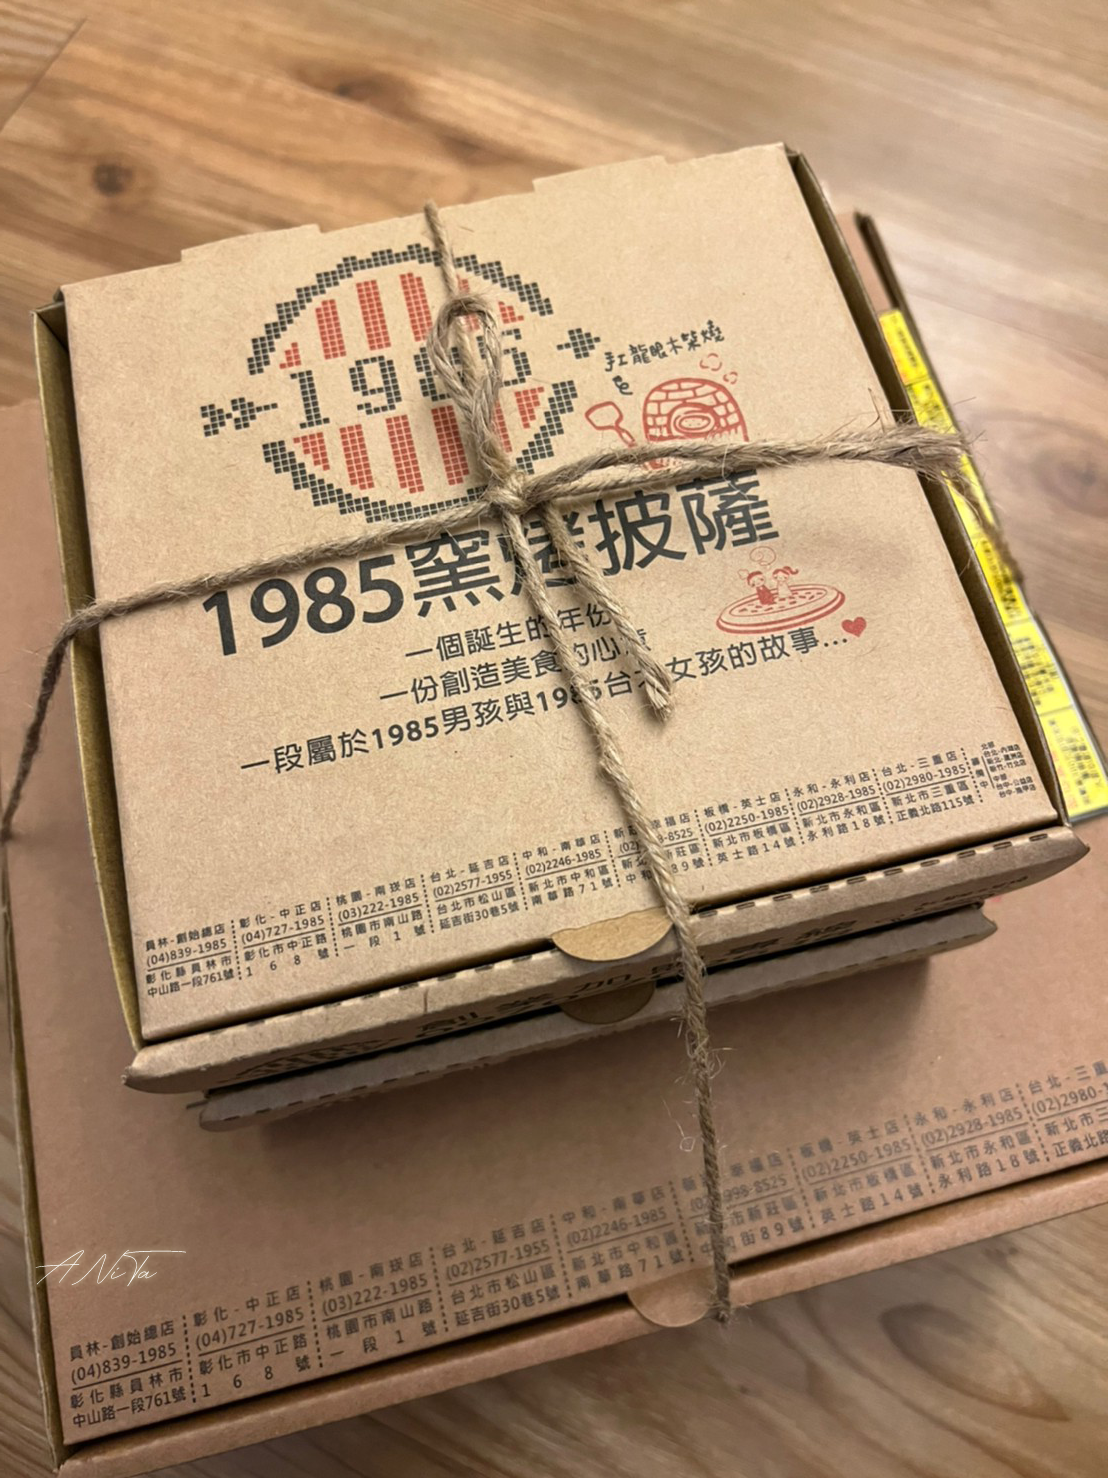 1985窯烤披薩,pizza,中和美食,南華路,台北美食,窯烤披薩,純手工製作,隱藏版